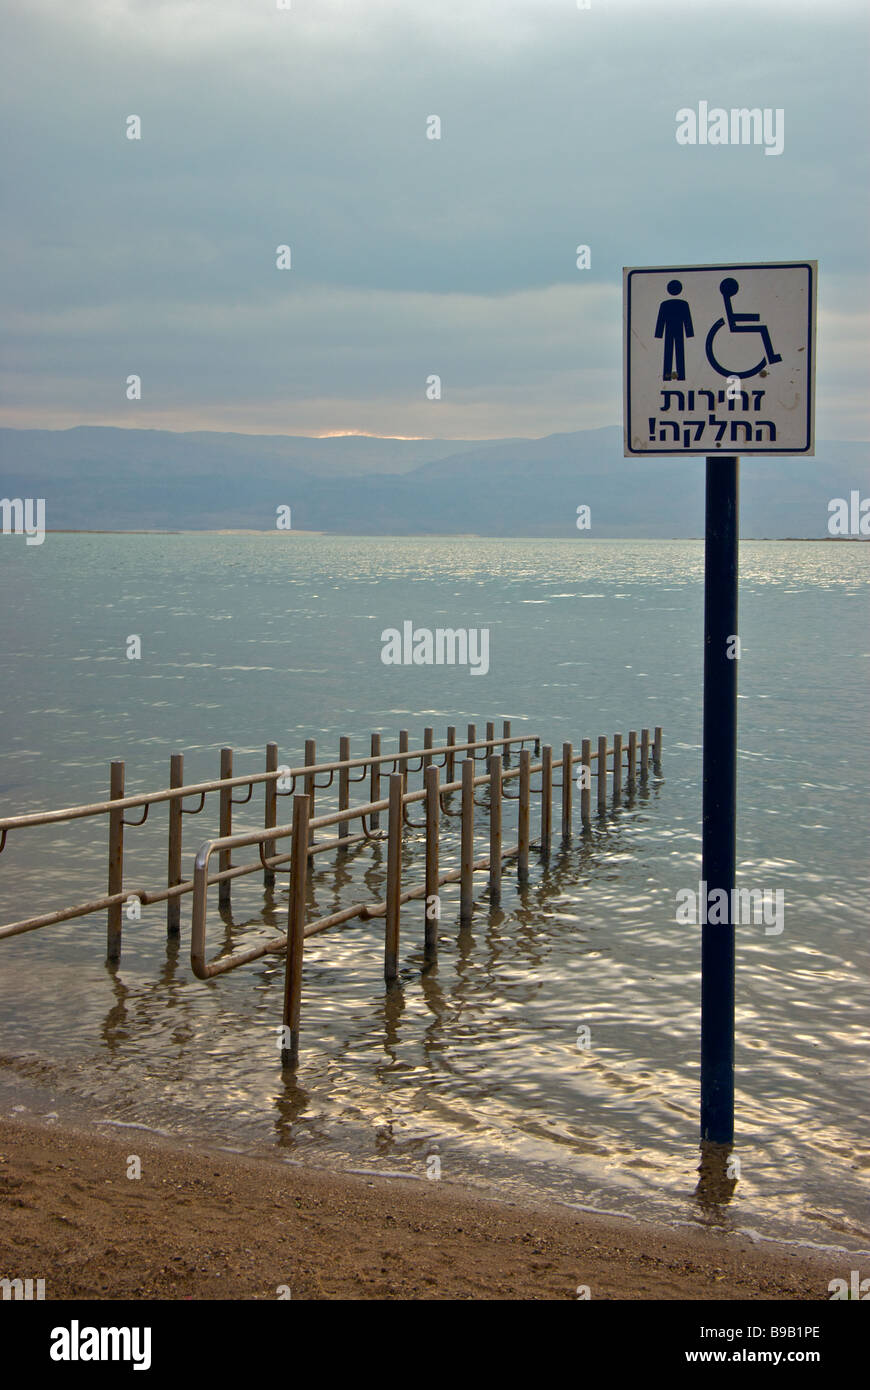 Garde-corps en acier inoxydable et de permettre à des personnes handicapées de la rampe d'accès à la plage pour les baigneurs des eaux de mer Morte flottant dans ville touristique de Ein Bokek Banque D'Images